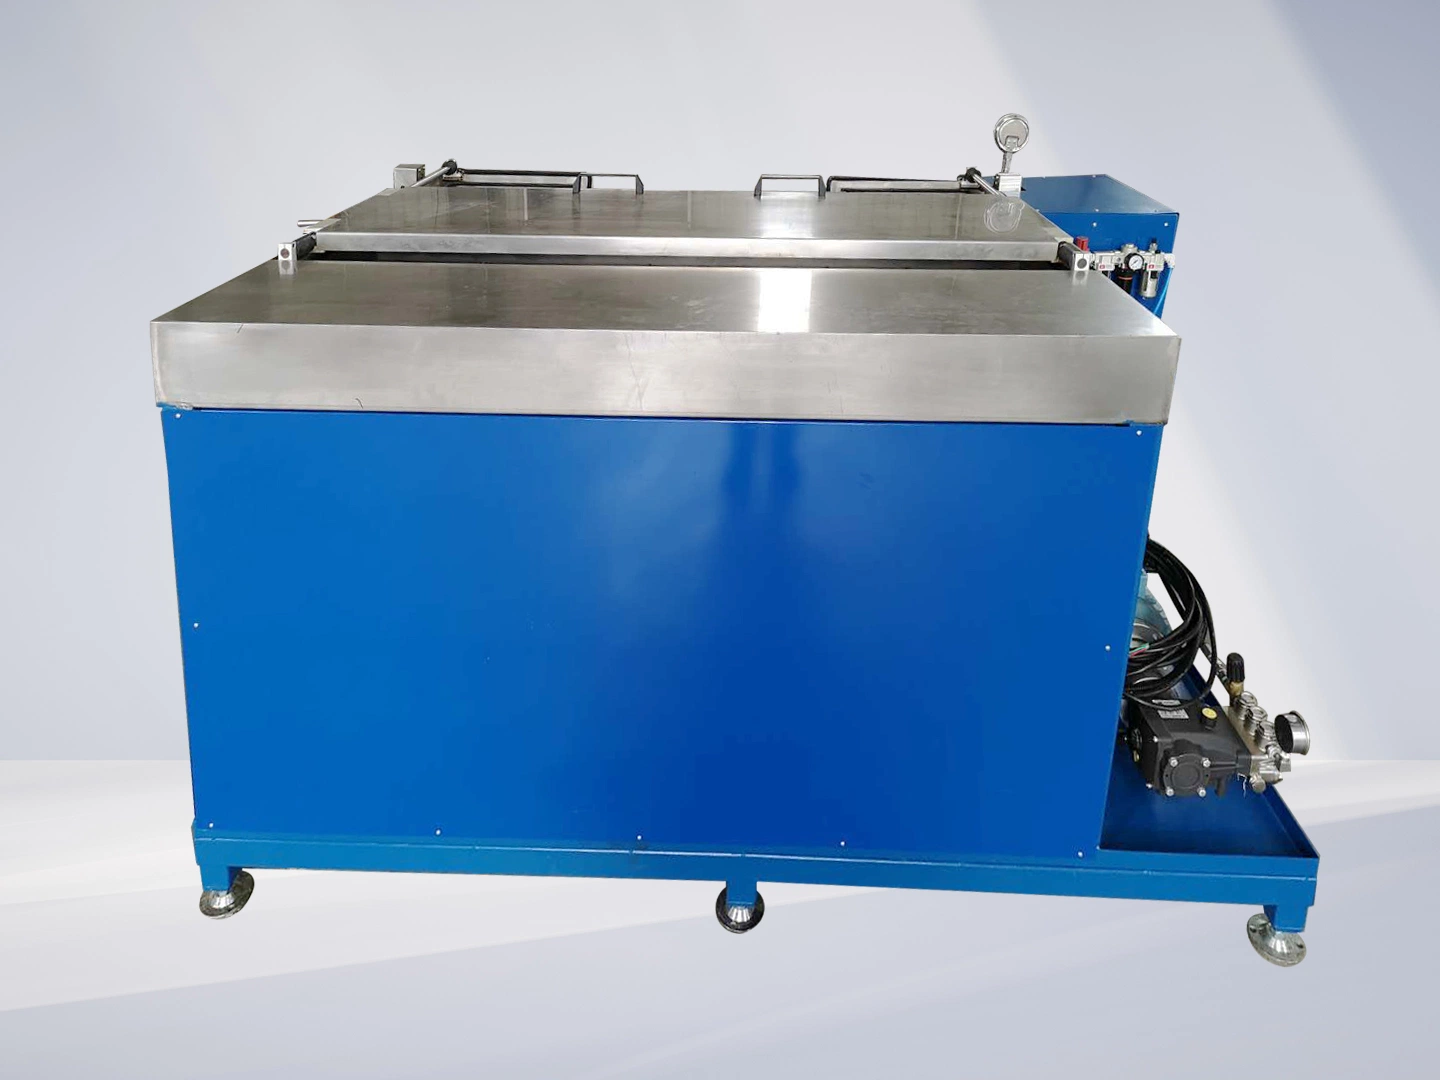 Производительность оборудования для гидроиспытаний гидрогидростатического испытательного стенда для гидравлических шлангов Используется для проверки давления и производительности каждого шланга